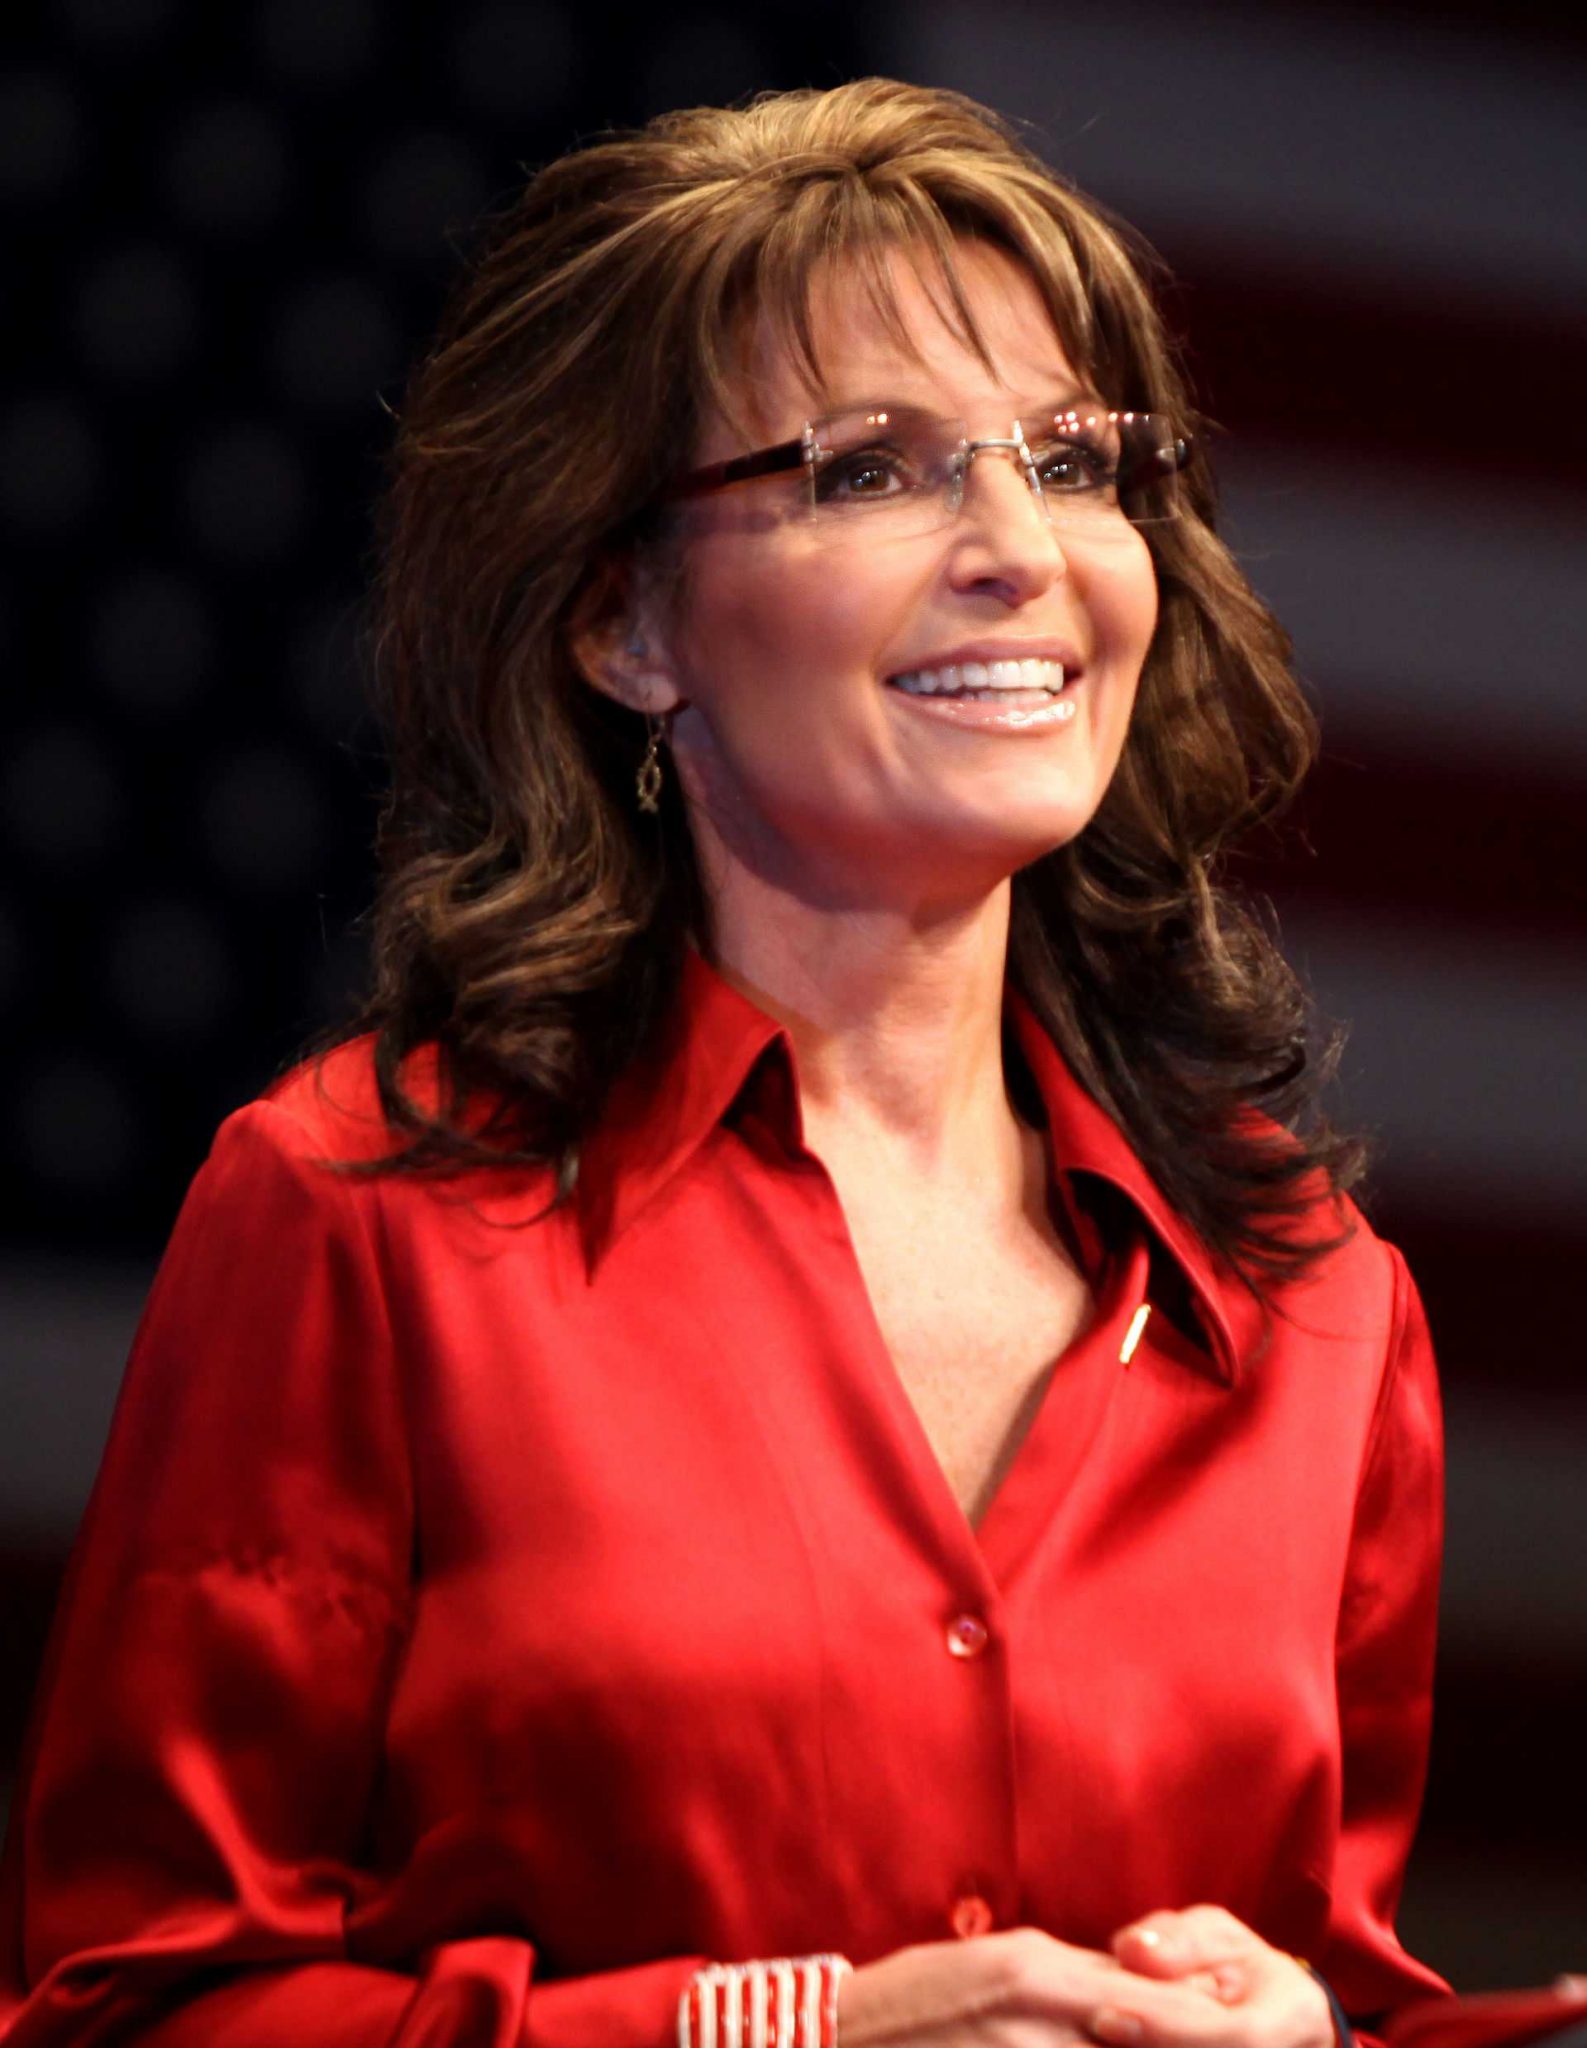 Sarah Palin smile pics